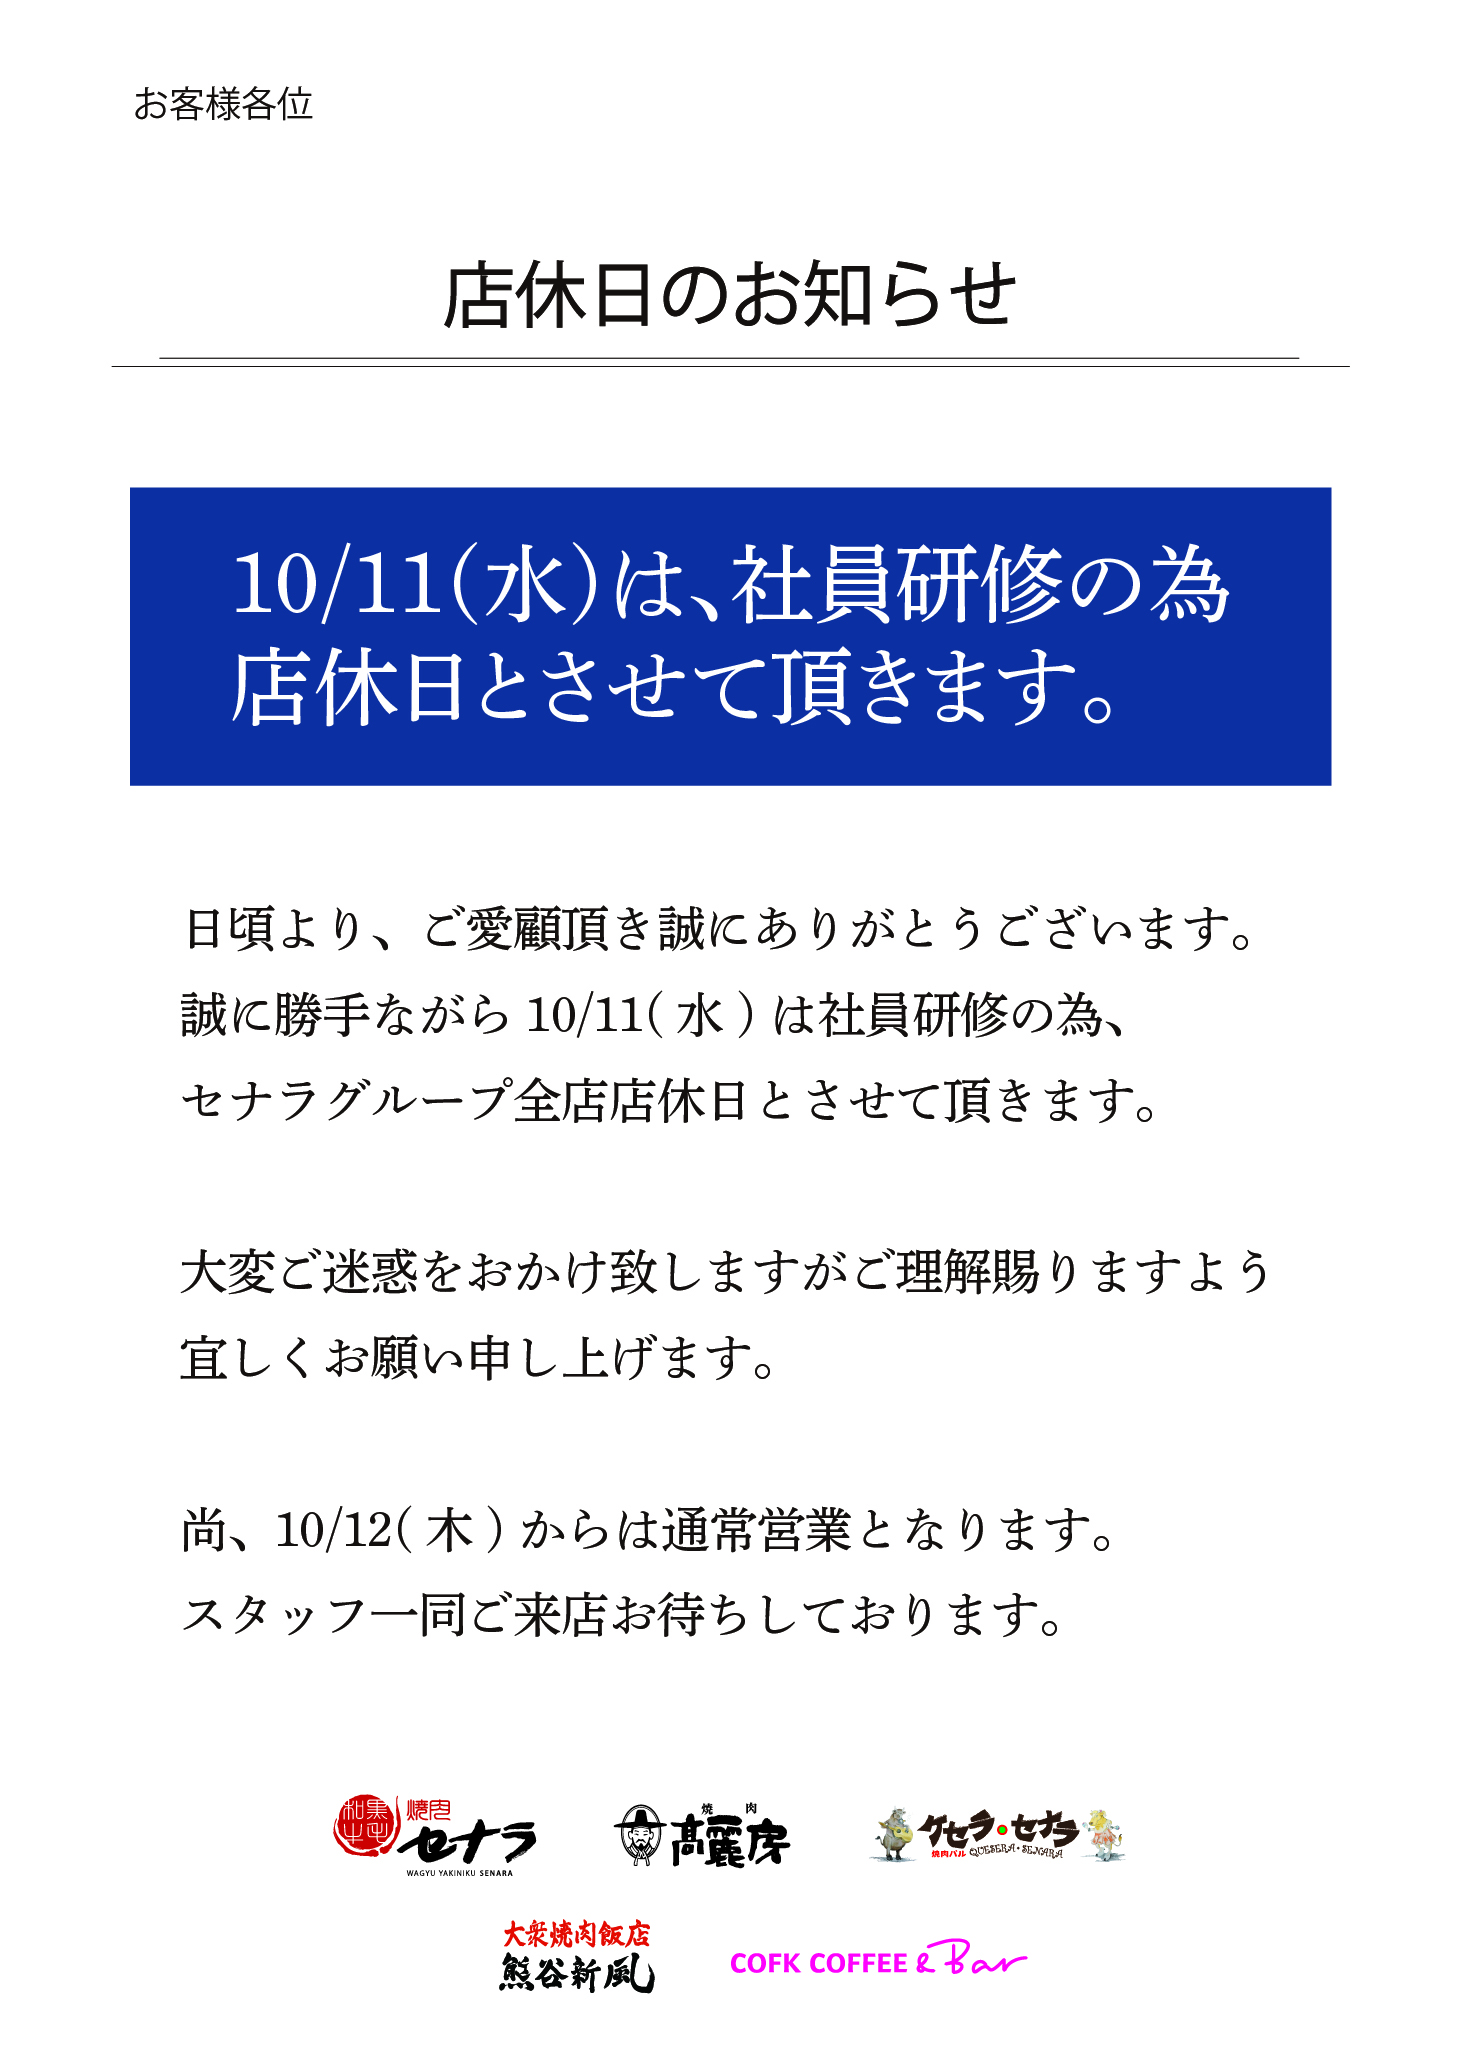 【セナラグループ全店】10/11(水)店休のお知らせ